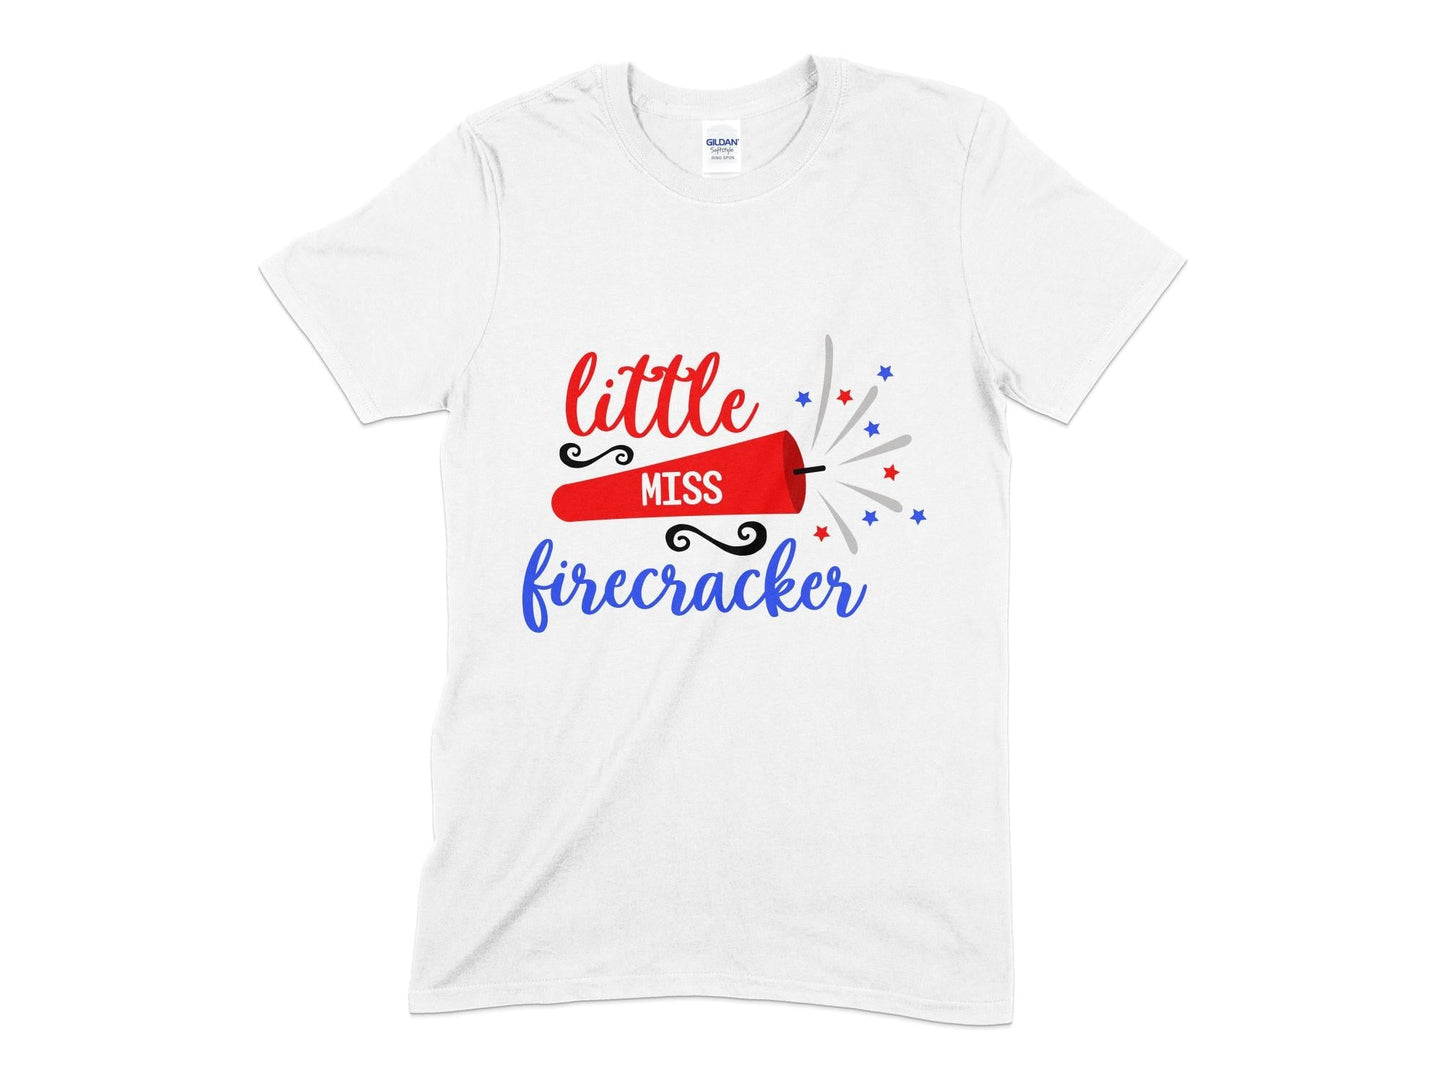 Little miss firecracker womens t-shirt - Premium t-shirt from MyDesigns - Just $19.95! Shop now at Lees Krazy Teez